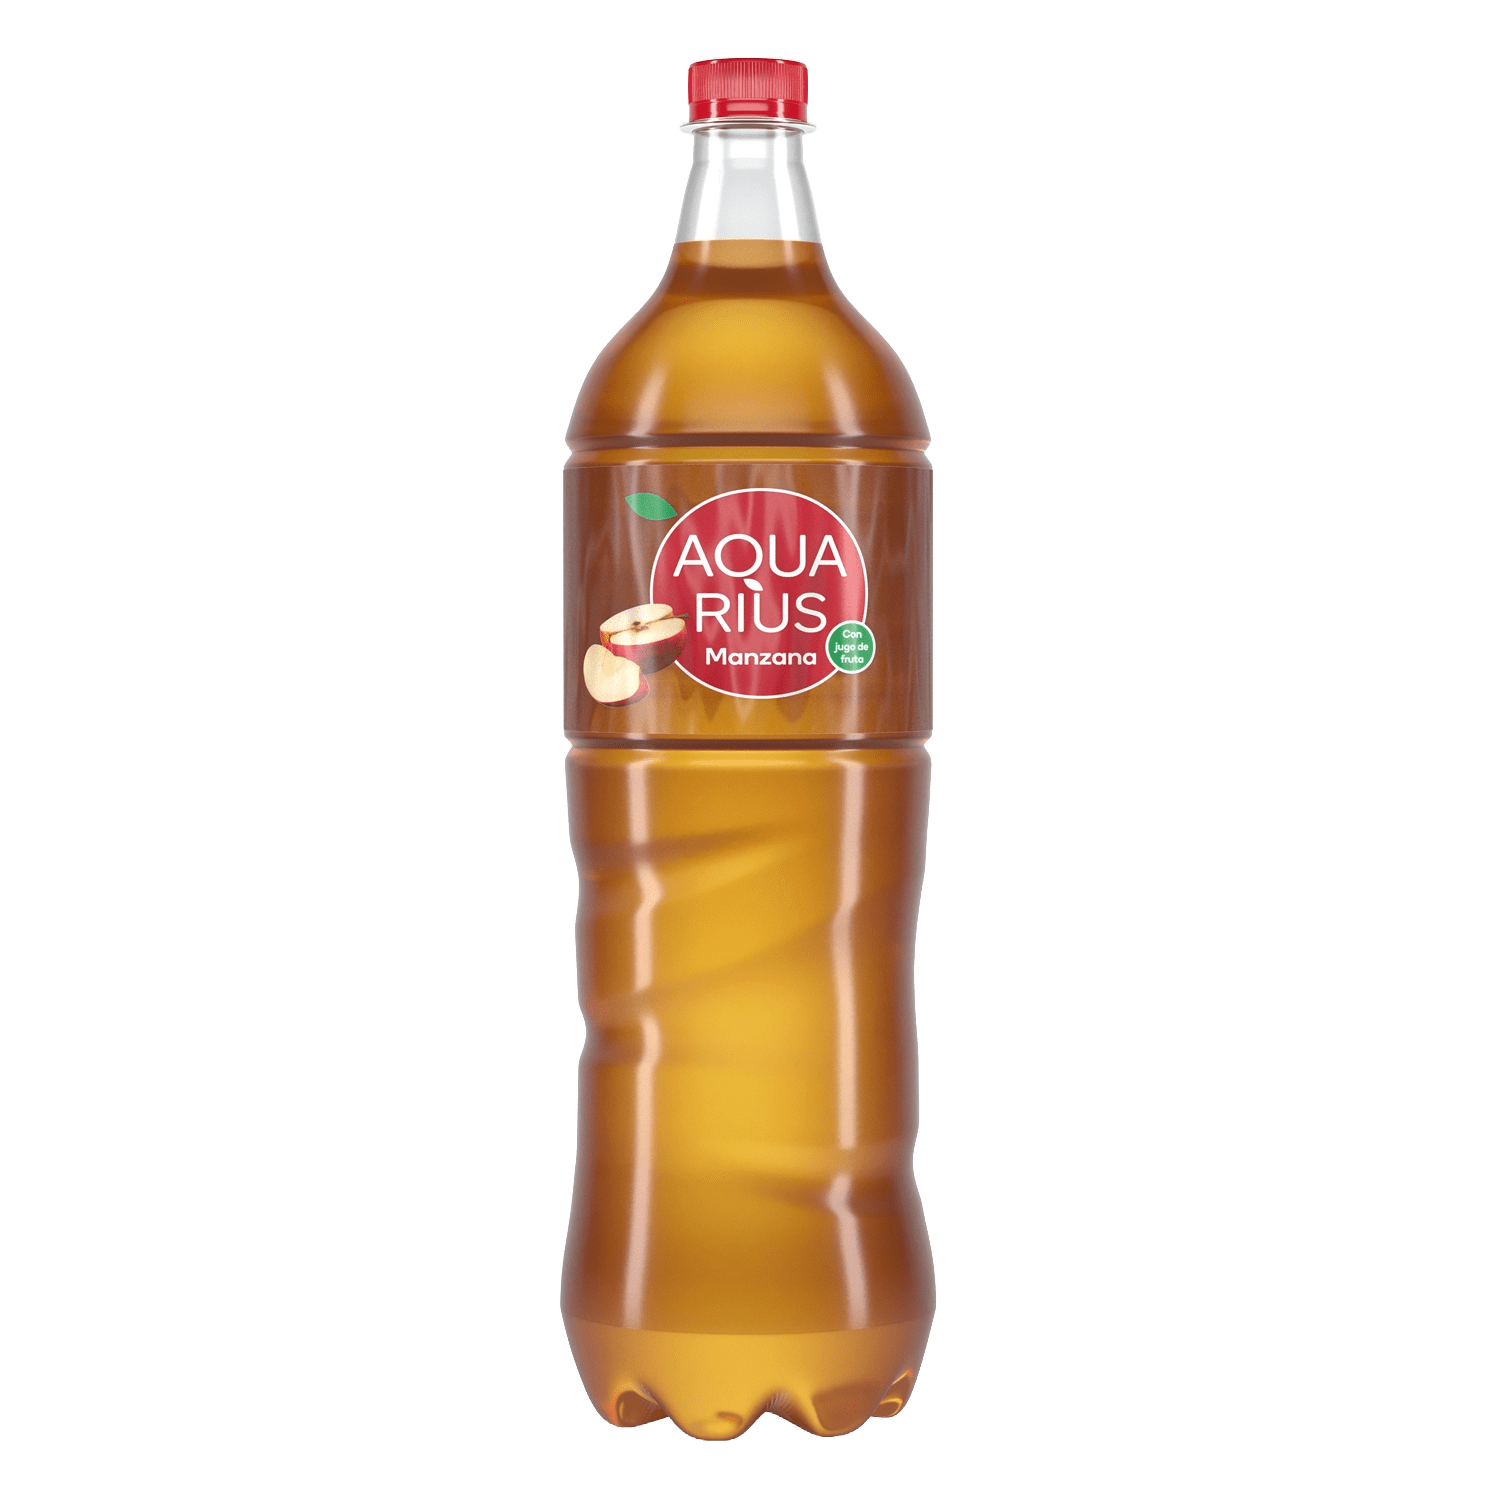 Botella de Aquarius Manzana 1,5L